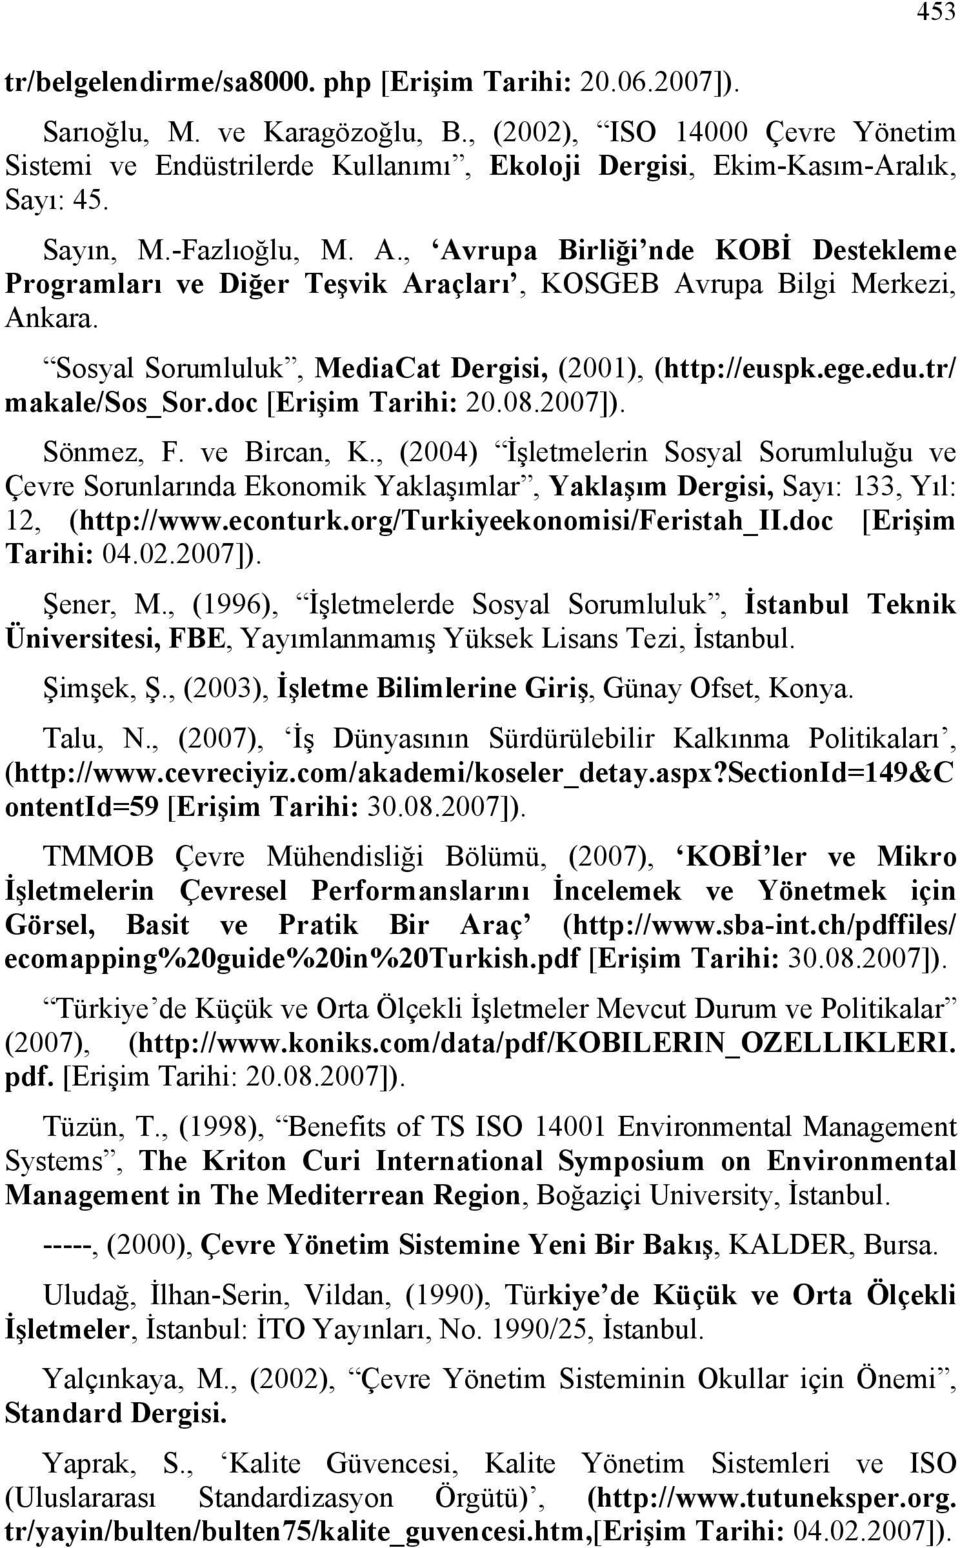 , Avrupa Birliği nde KOBİ Destekleme Programları ve Diğer Teşvik Araçları, KOSGEB Avrupa Bilgi Merkezi, Ankara. Sosyal Sorumluluk, MediaCat Dergisi, (2001), (http://euspk.ege.edu.tr/ makale/sos_sor.